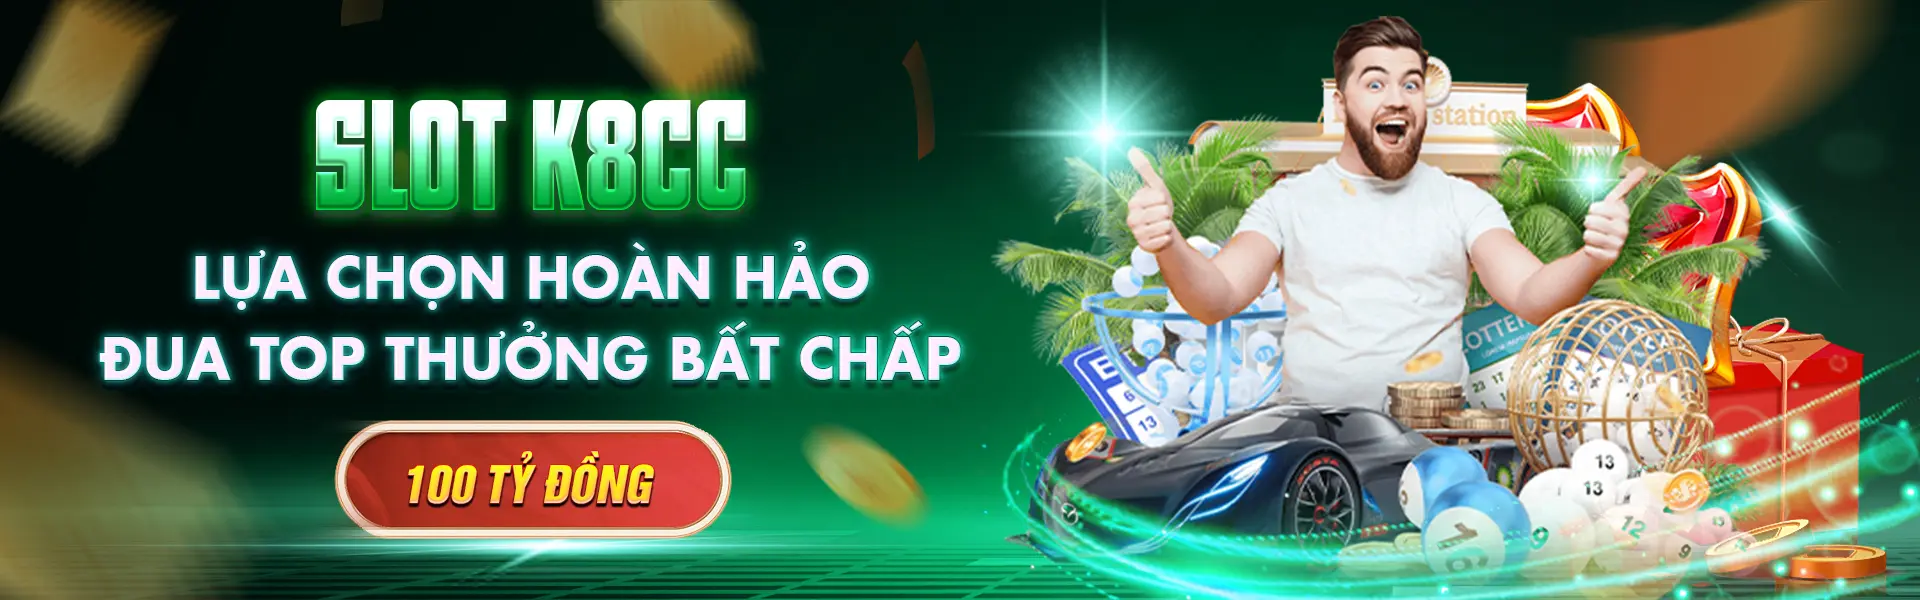 slot-k8cc-lua-chon-hoan-hao-dua-top-thuong-bat-chap